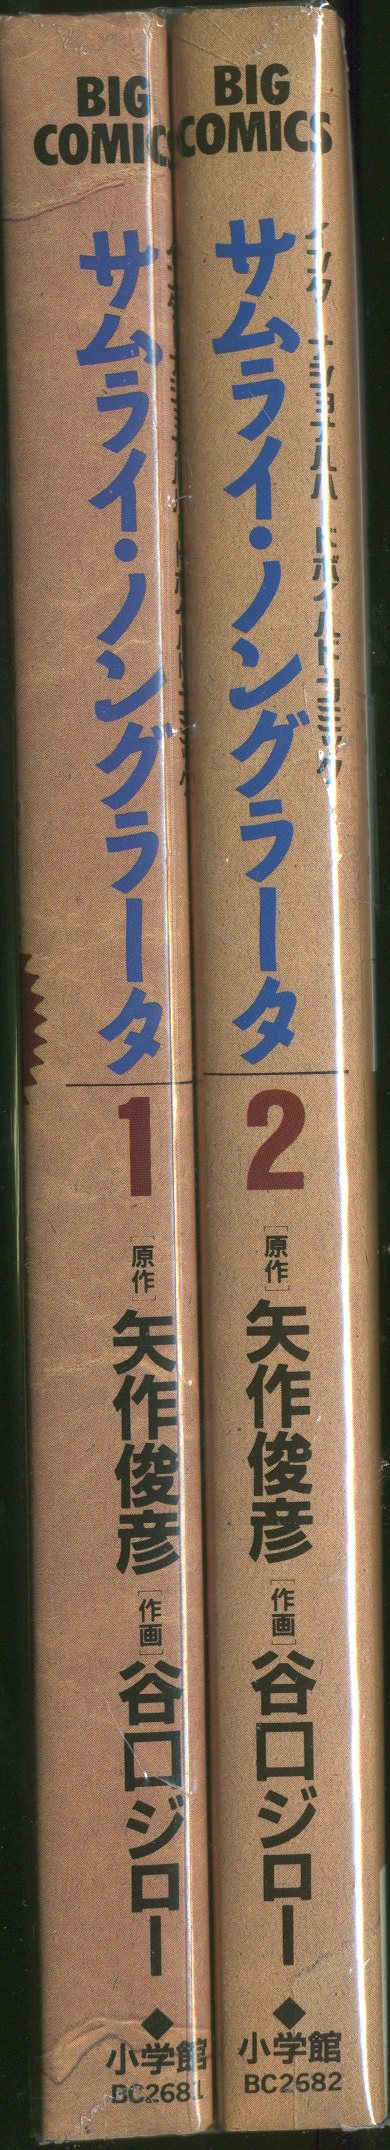 小学館 ビッグコミックス 谷口ジロー サムライ ノングラータ 全2巻 セット まんだらけ Mandarake